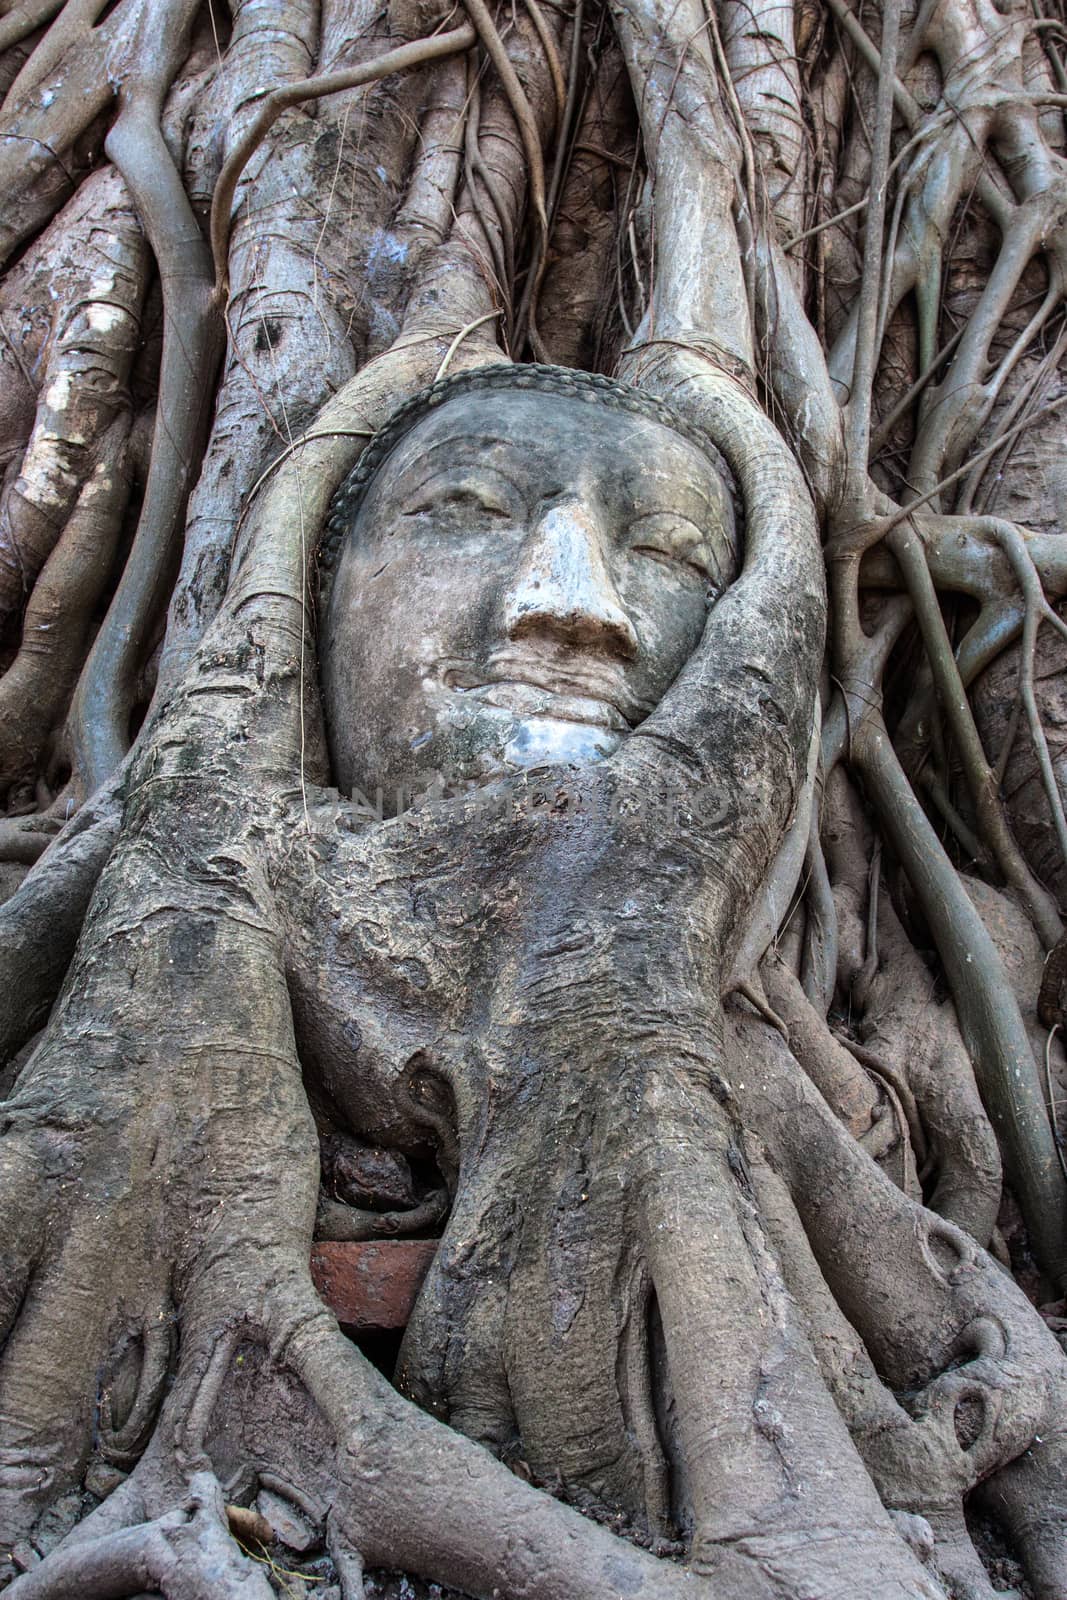 Head in the Bodhi tree